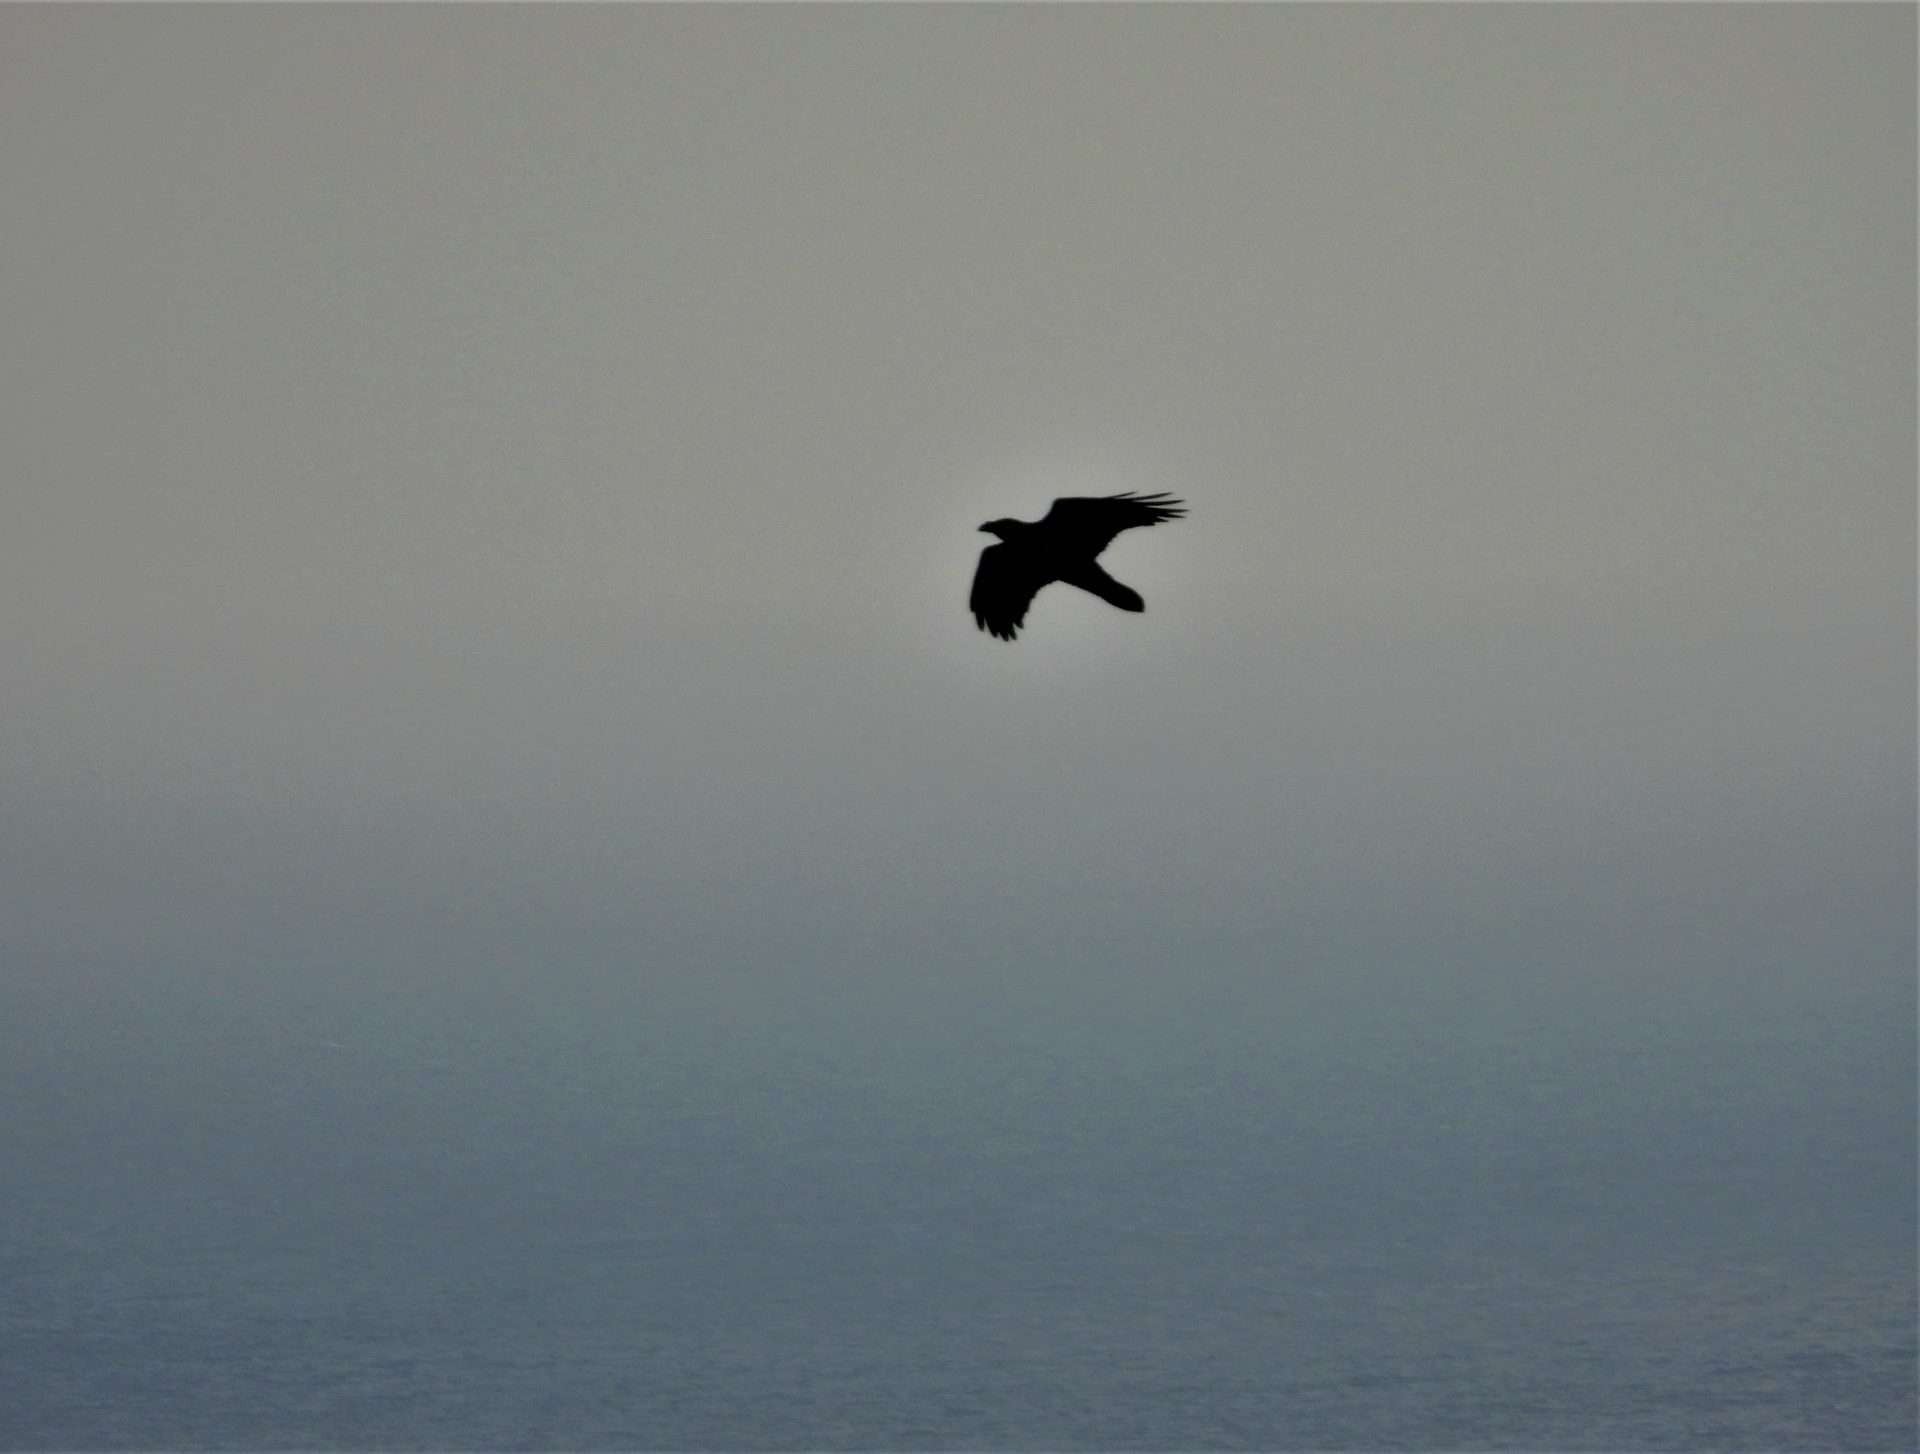 Raven by Kenneth Bradley at Labrador Bay RSPB